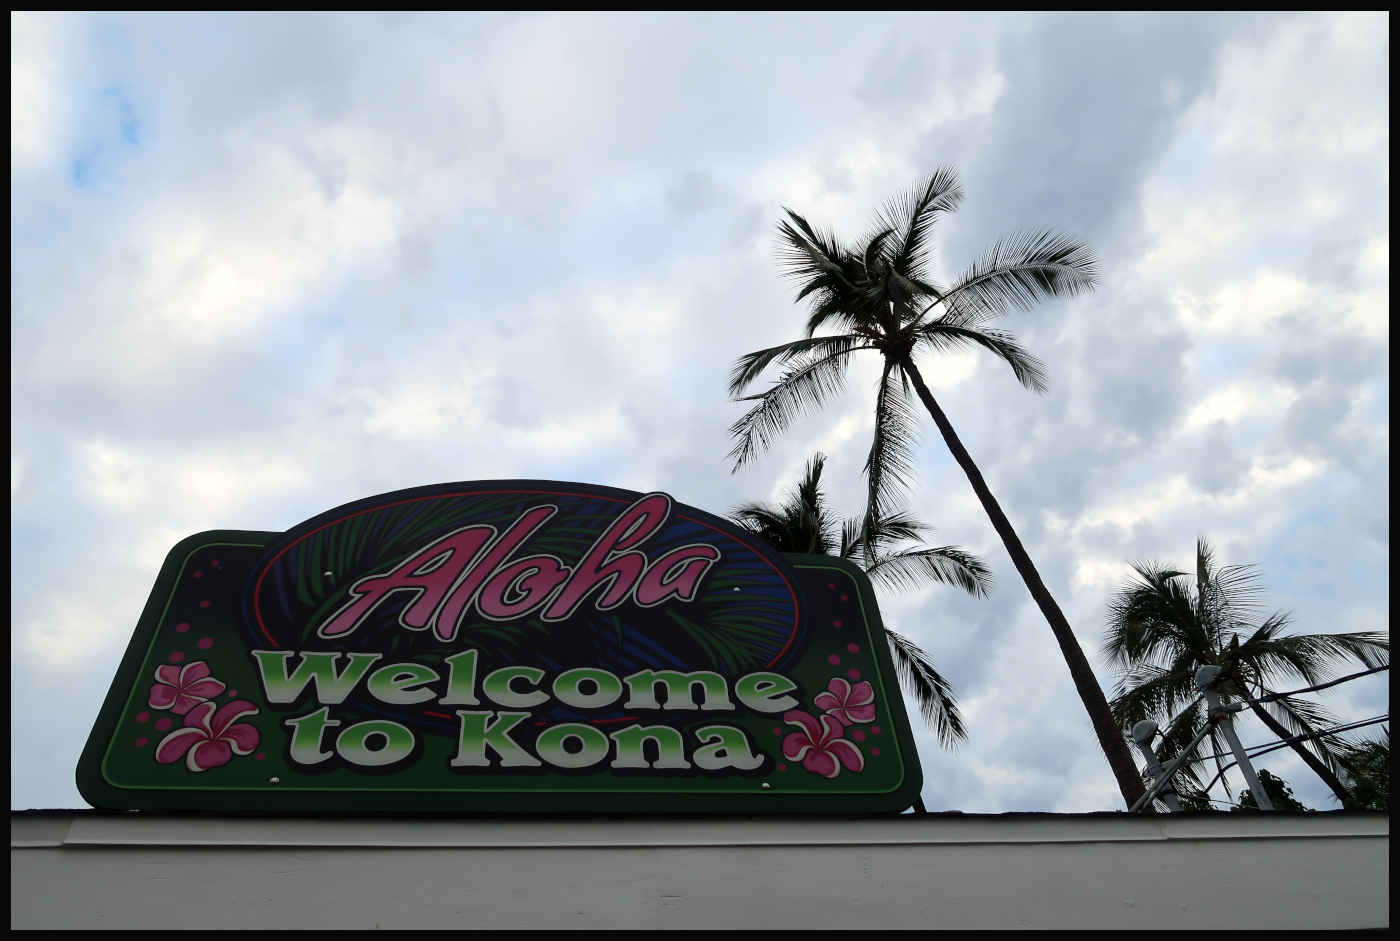 Aloha Welcome To Kona - Kailua Pier